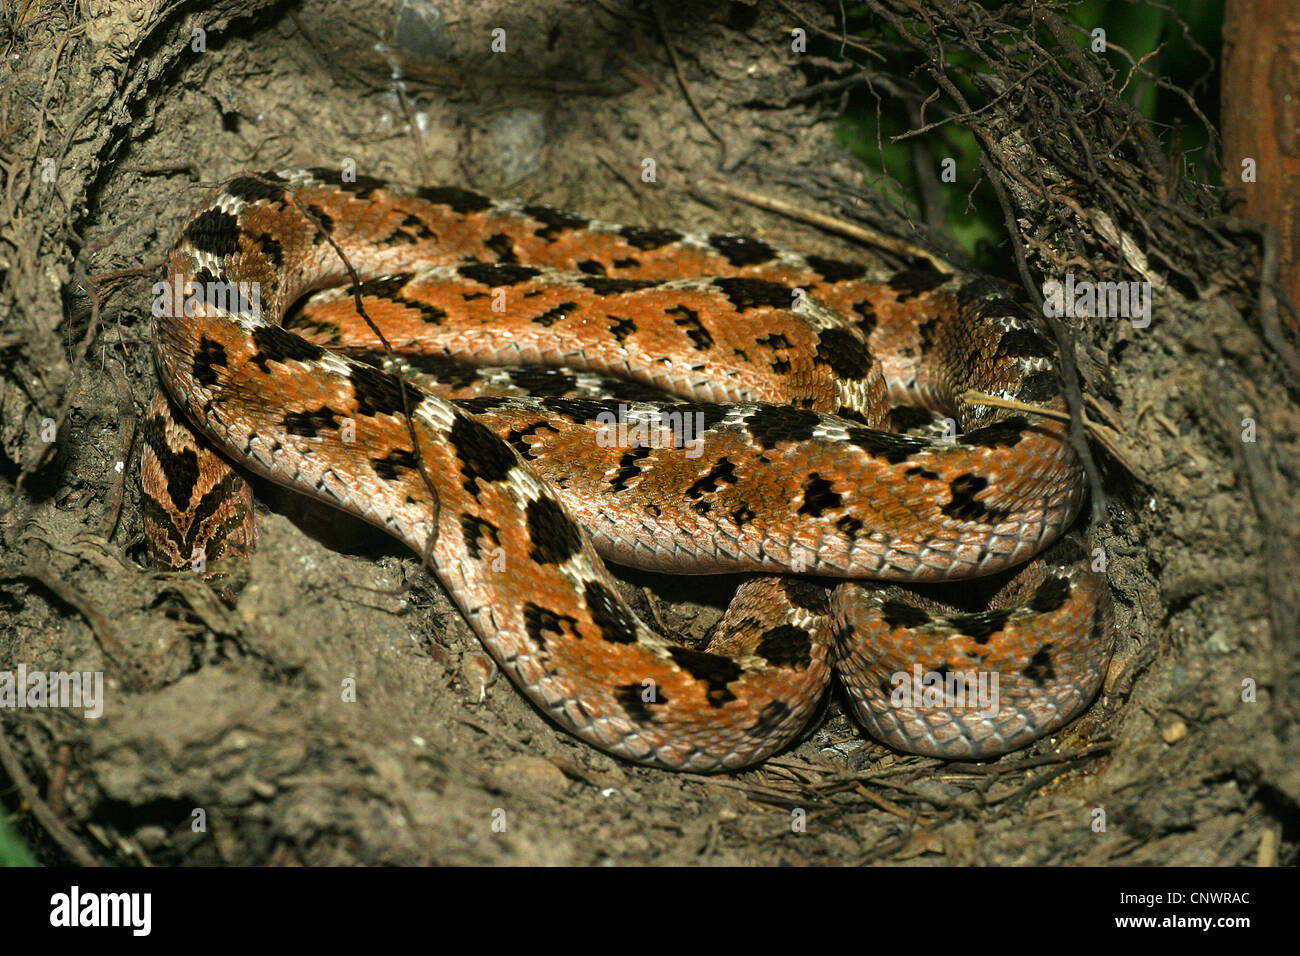 egg-eating snake, African egg-eating snake (Dasypeltis scabra), lying in a hollow Stock Photo